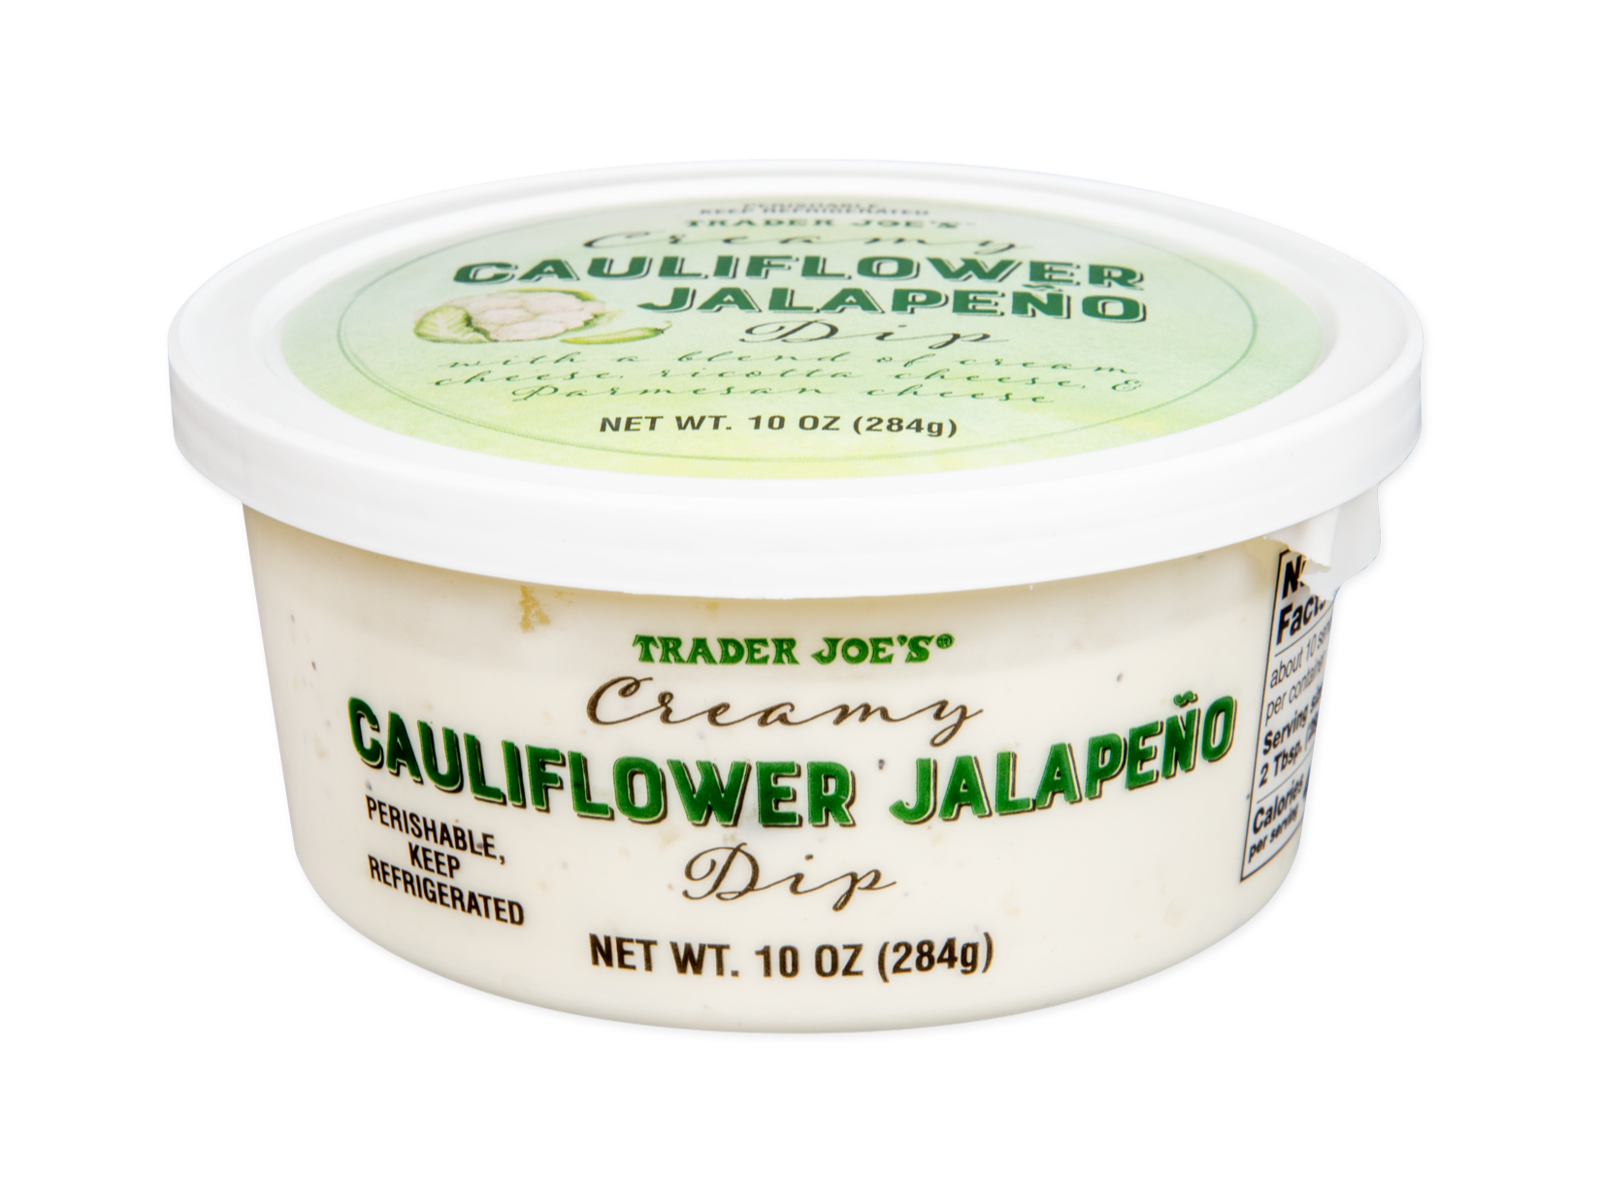 Creamy Cauliflower Jalapeno Dip